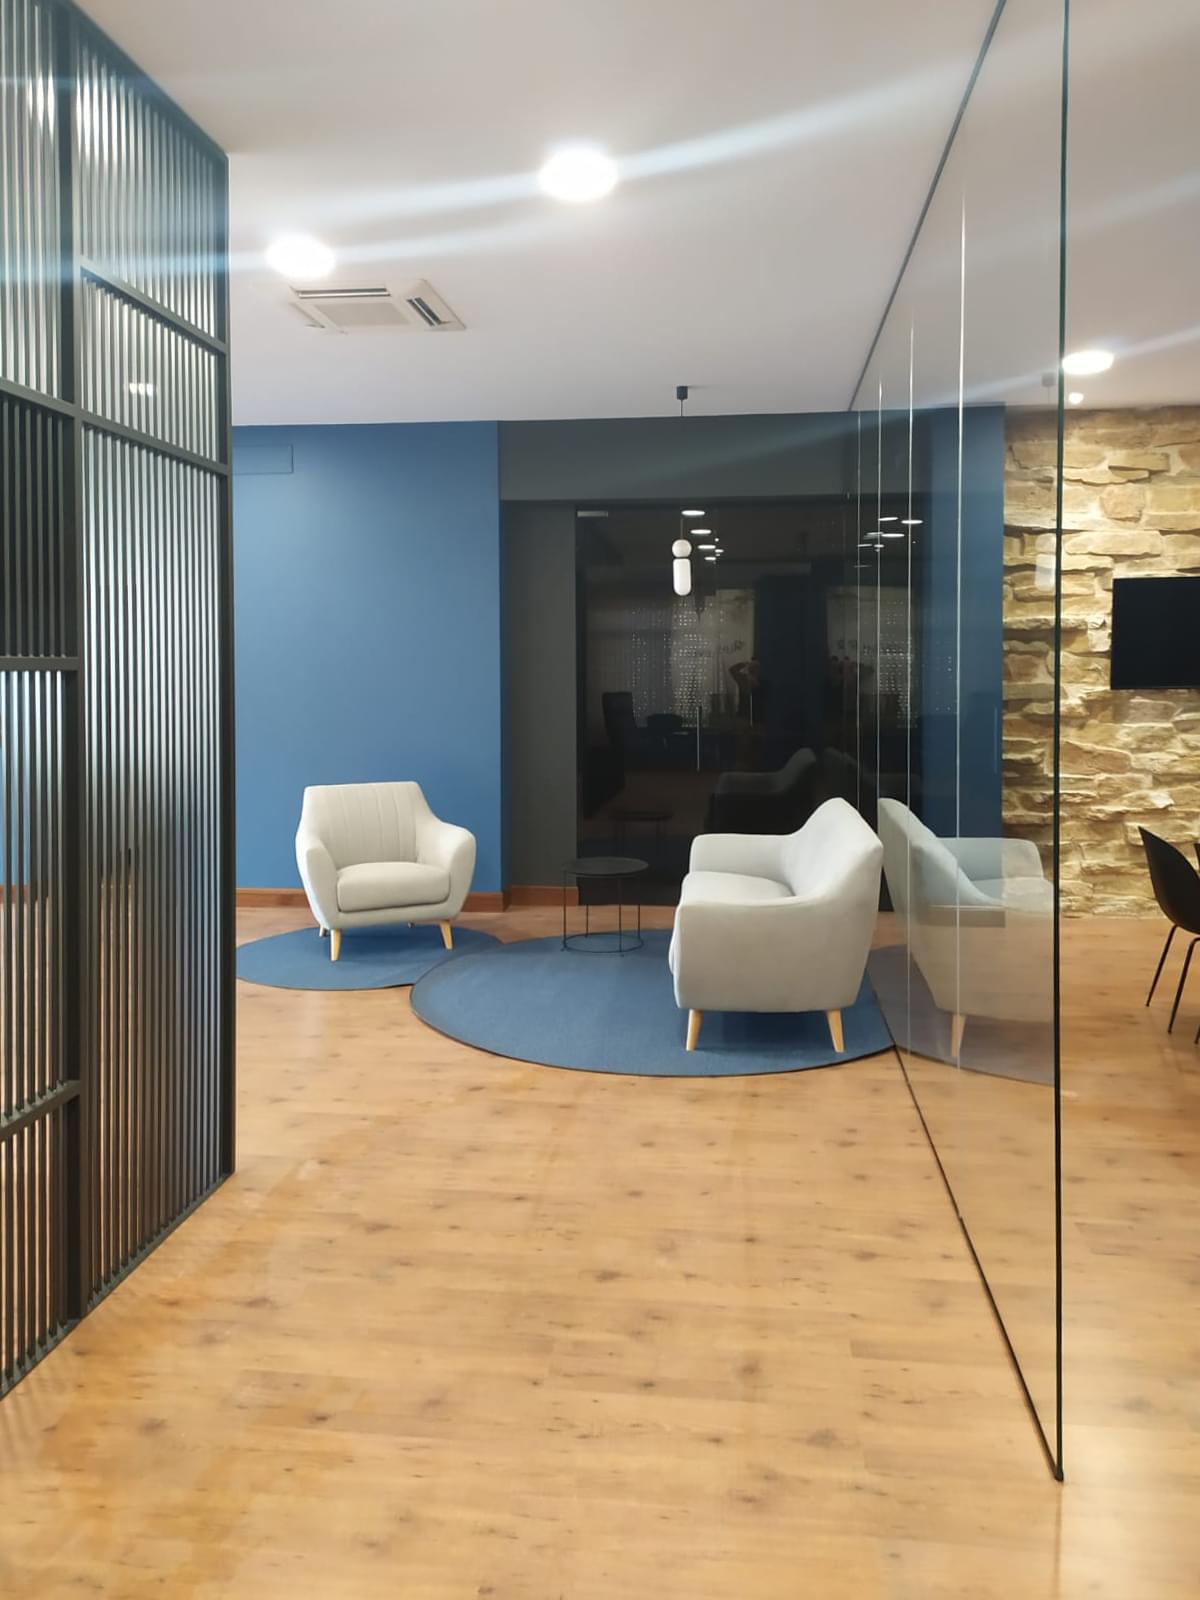 descansillo del proyecto de diseño de interiorismo de oficinas en Zaragoza, para la empresa de reciclaje Unilevel